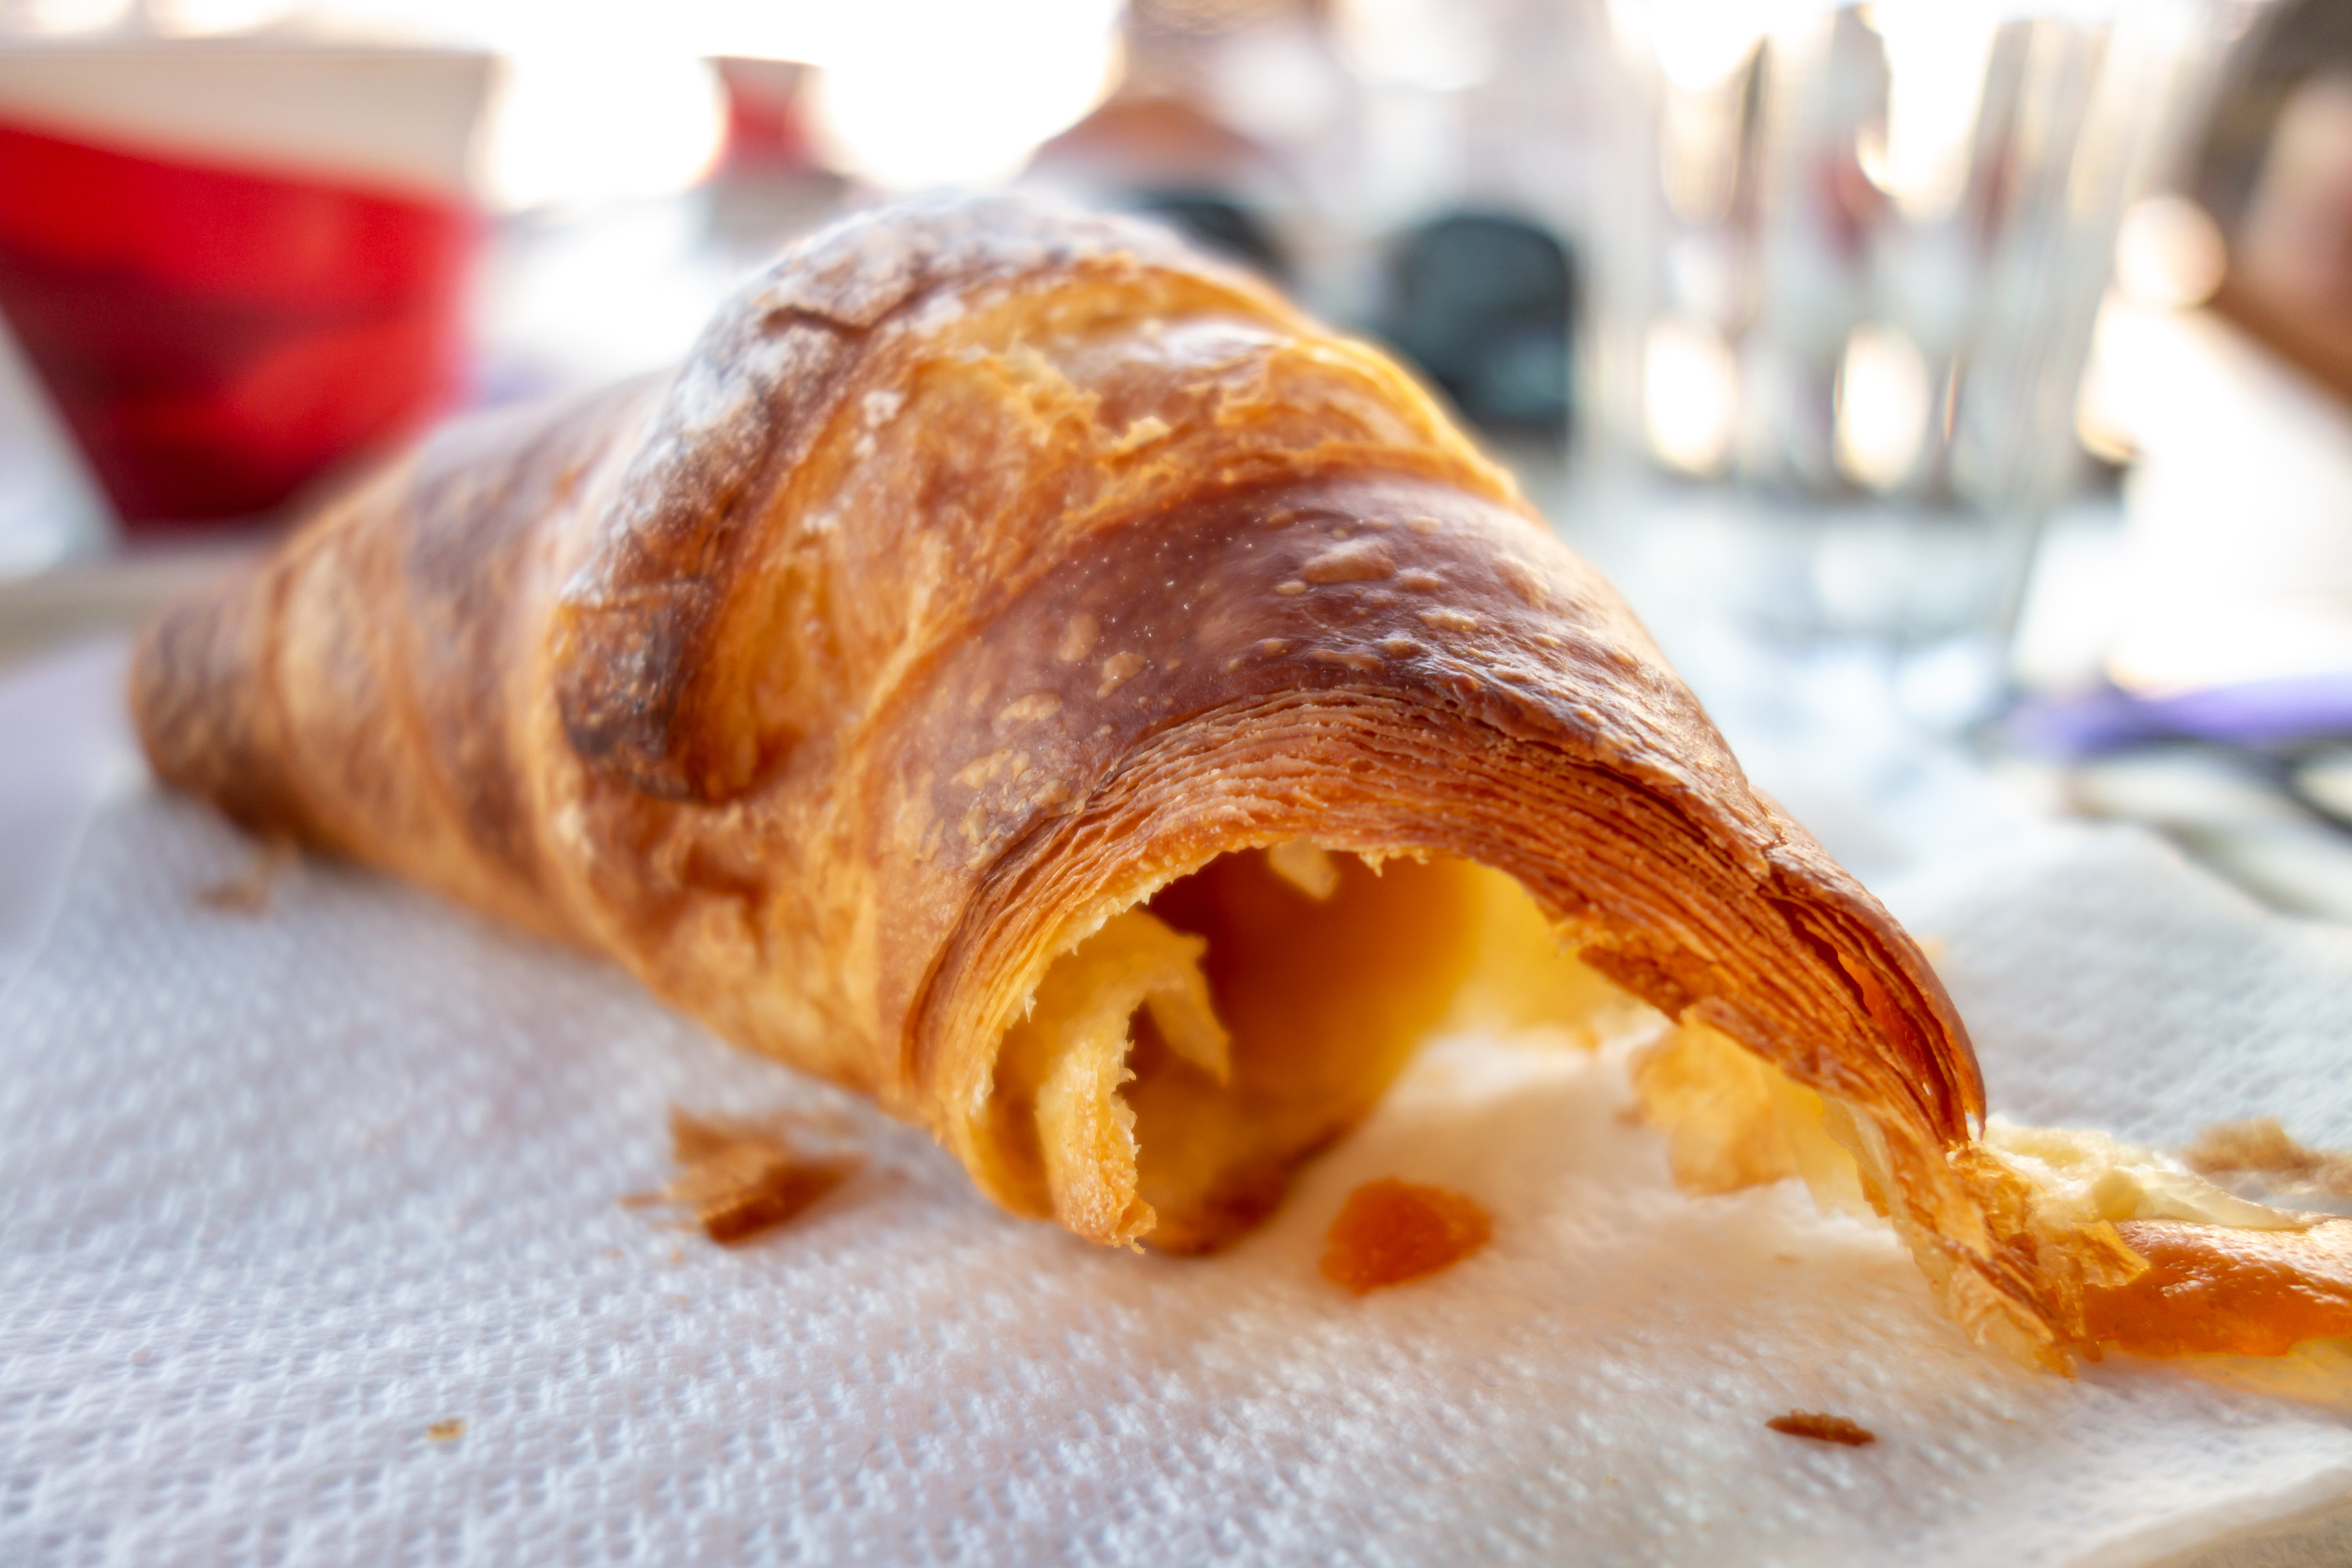 Croissant k snídani je naprosto báječný a v restauraci či kavárně vám jej přinesou teplý.